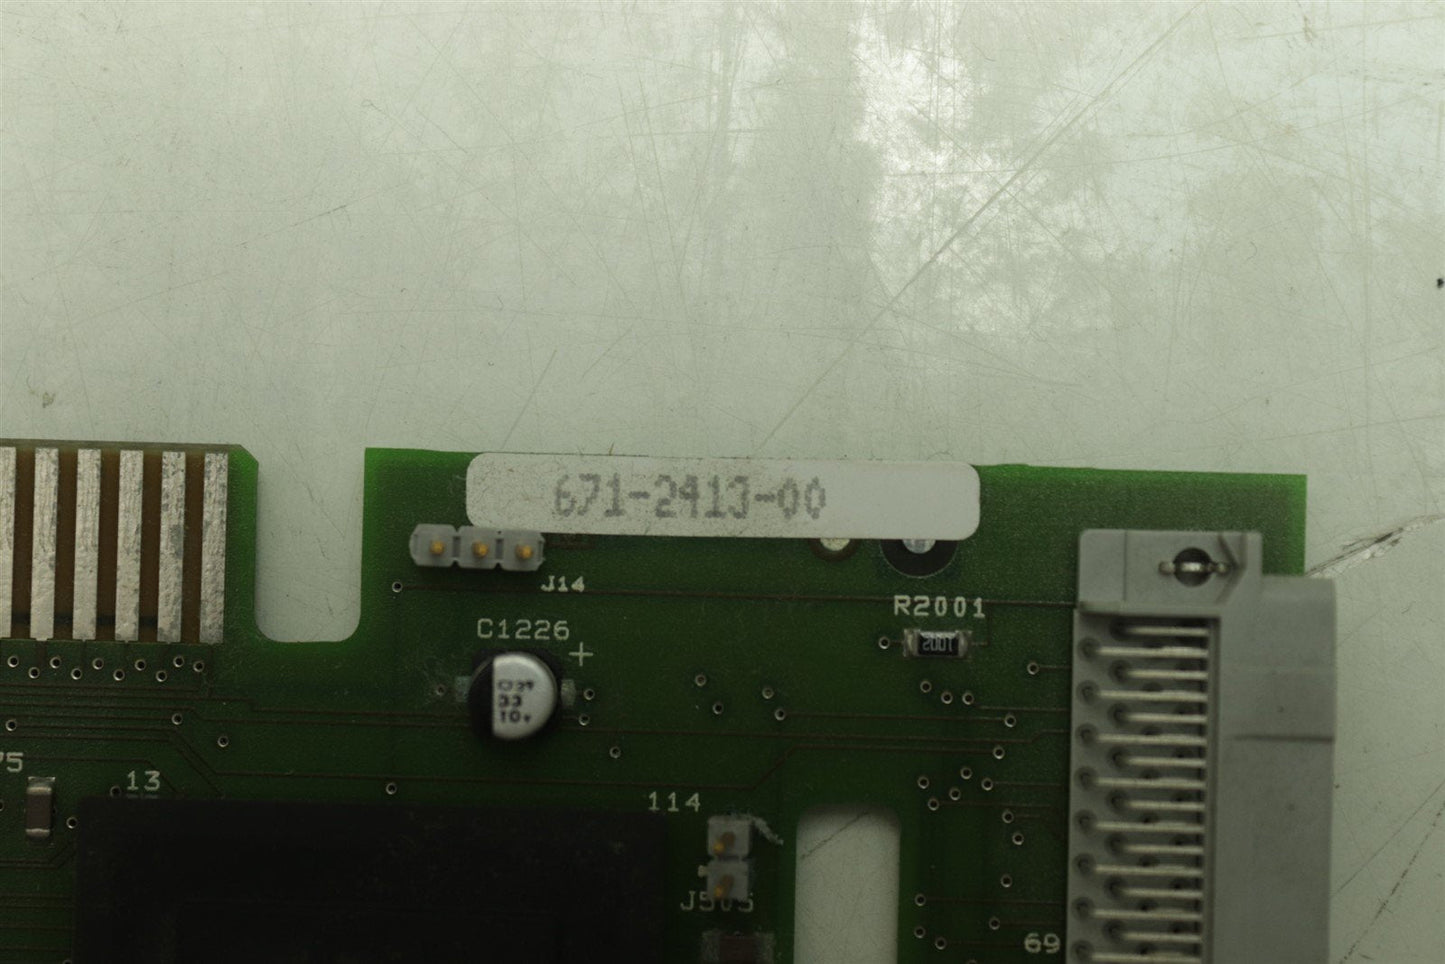 Tektronix TLS 216 DRAM/Processor board 671-2413-00